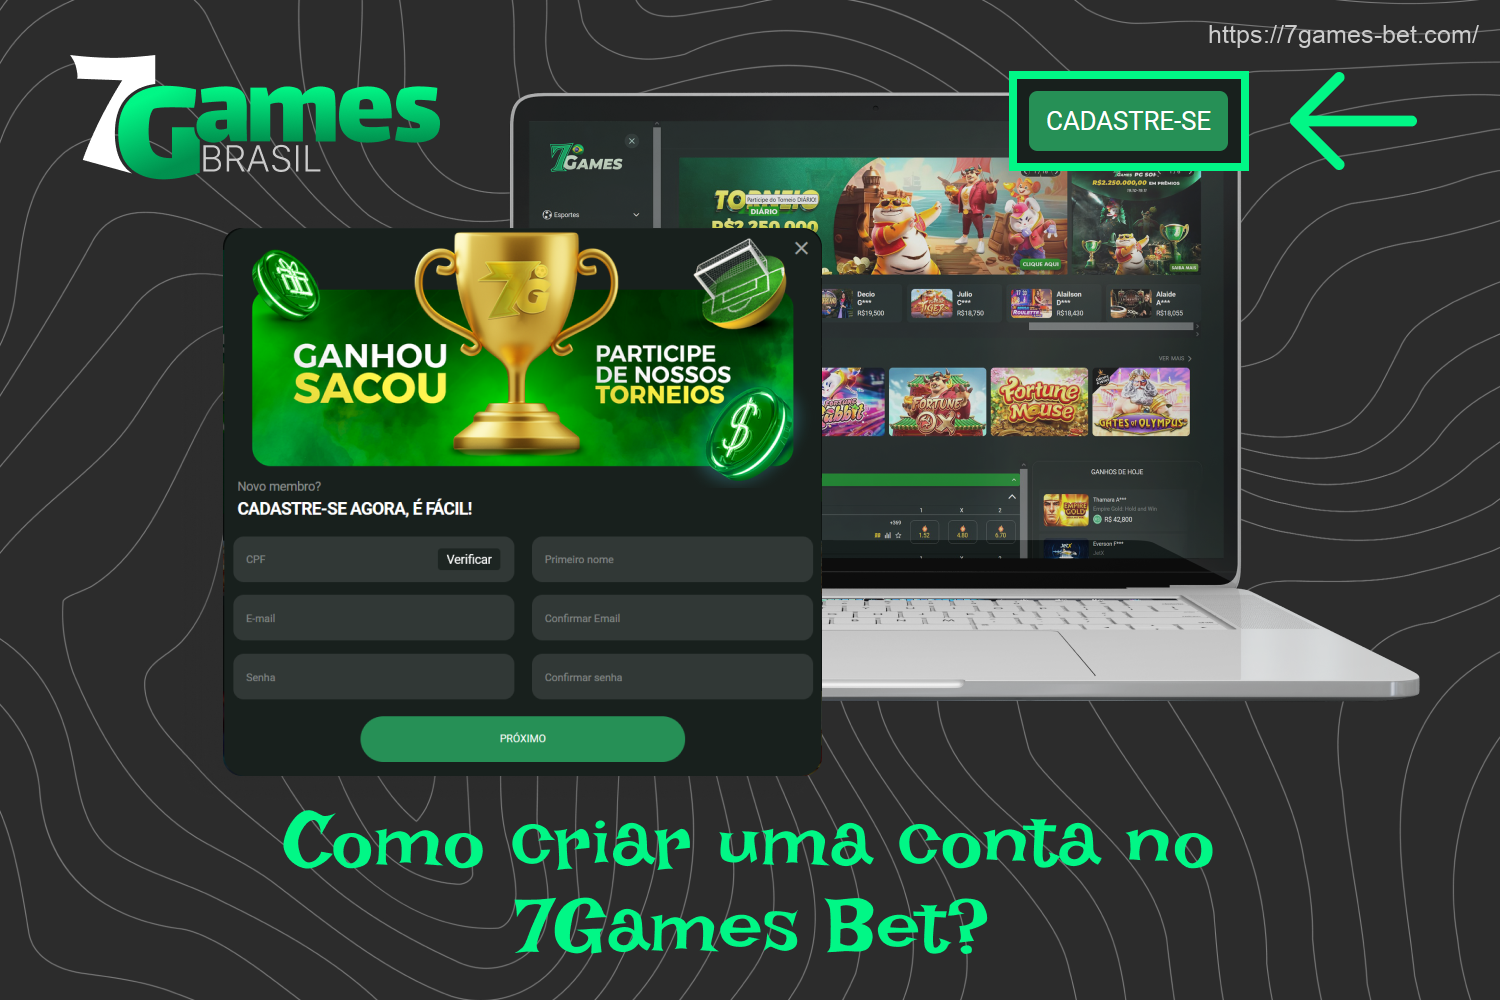 Depois de se registrar no 7Games, os jogadores do Brasil terão acesso a todos os jogos e recursos do cassino